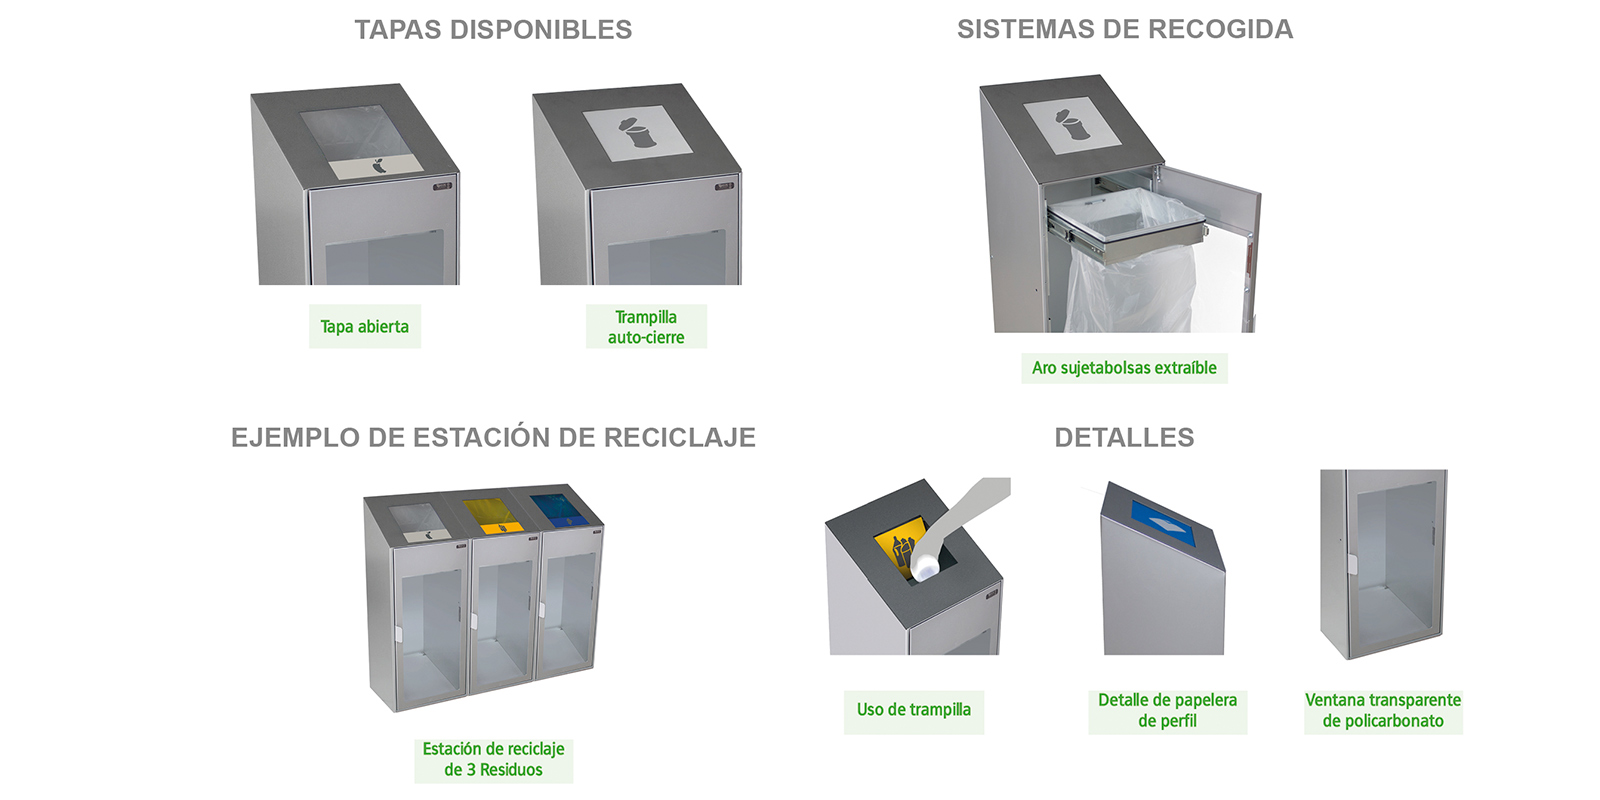 tapas, sistemas de recogida, ejemplos y detalles de estacion de reciclaje